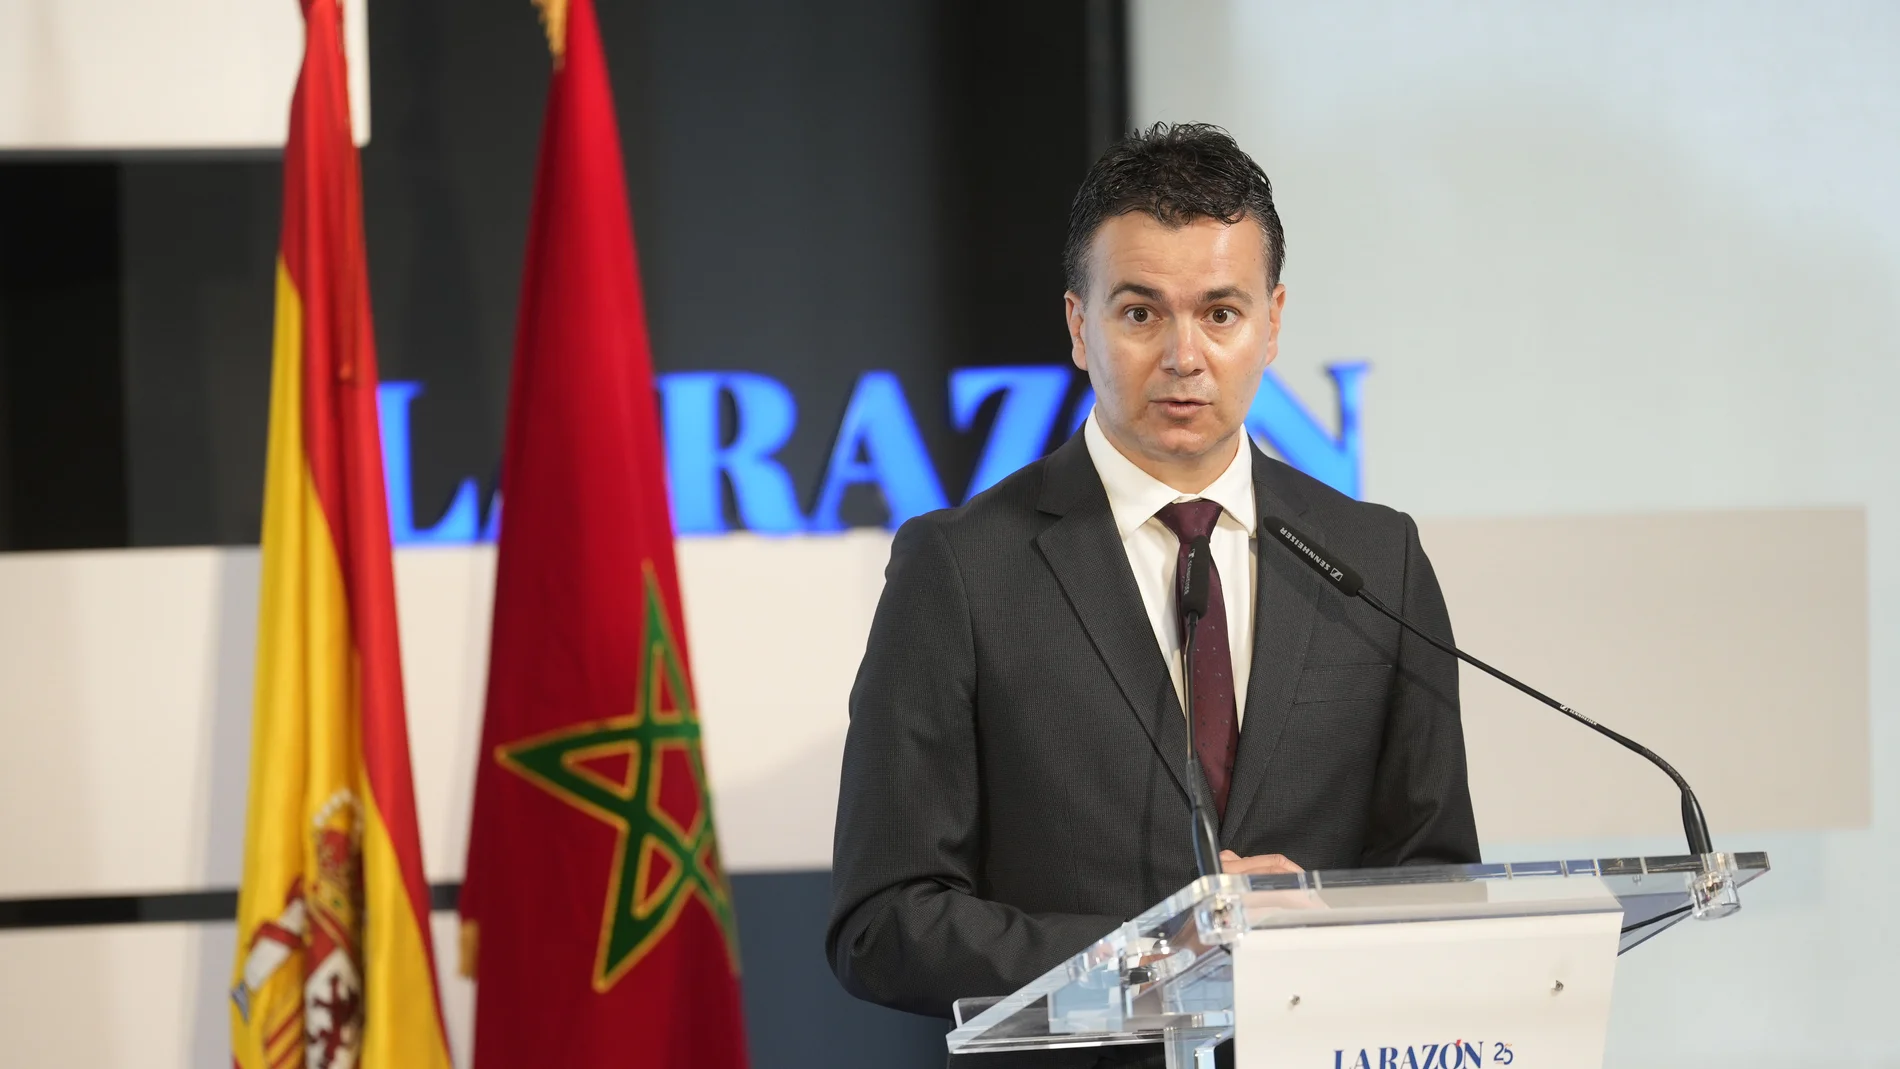 El Ministro de de Industria, Comercio y Turismo, Héctor Gómez en el Foro Económico Marruecos-España organizado por LA RAZÓN